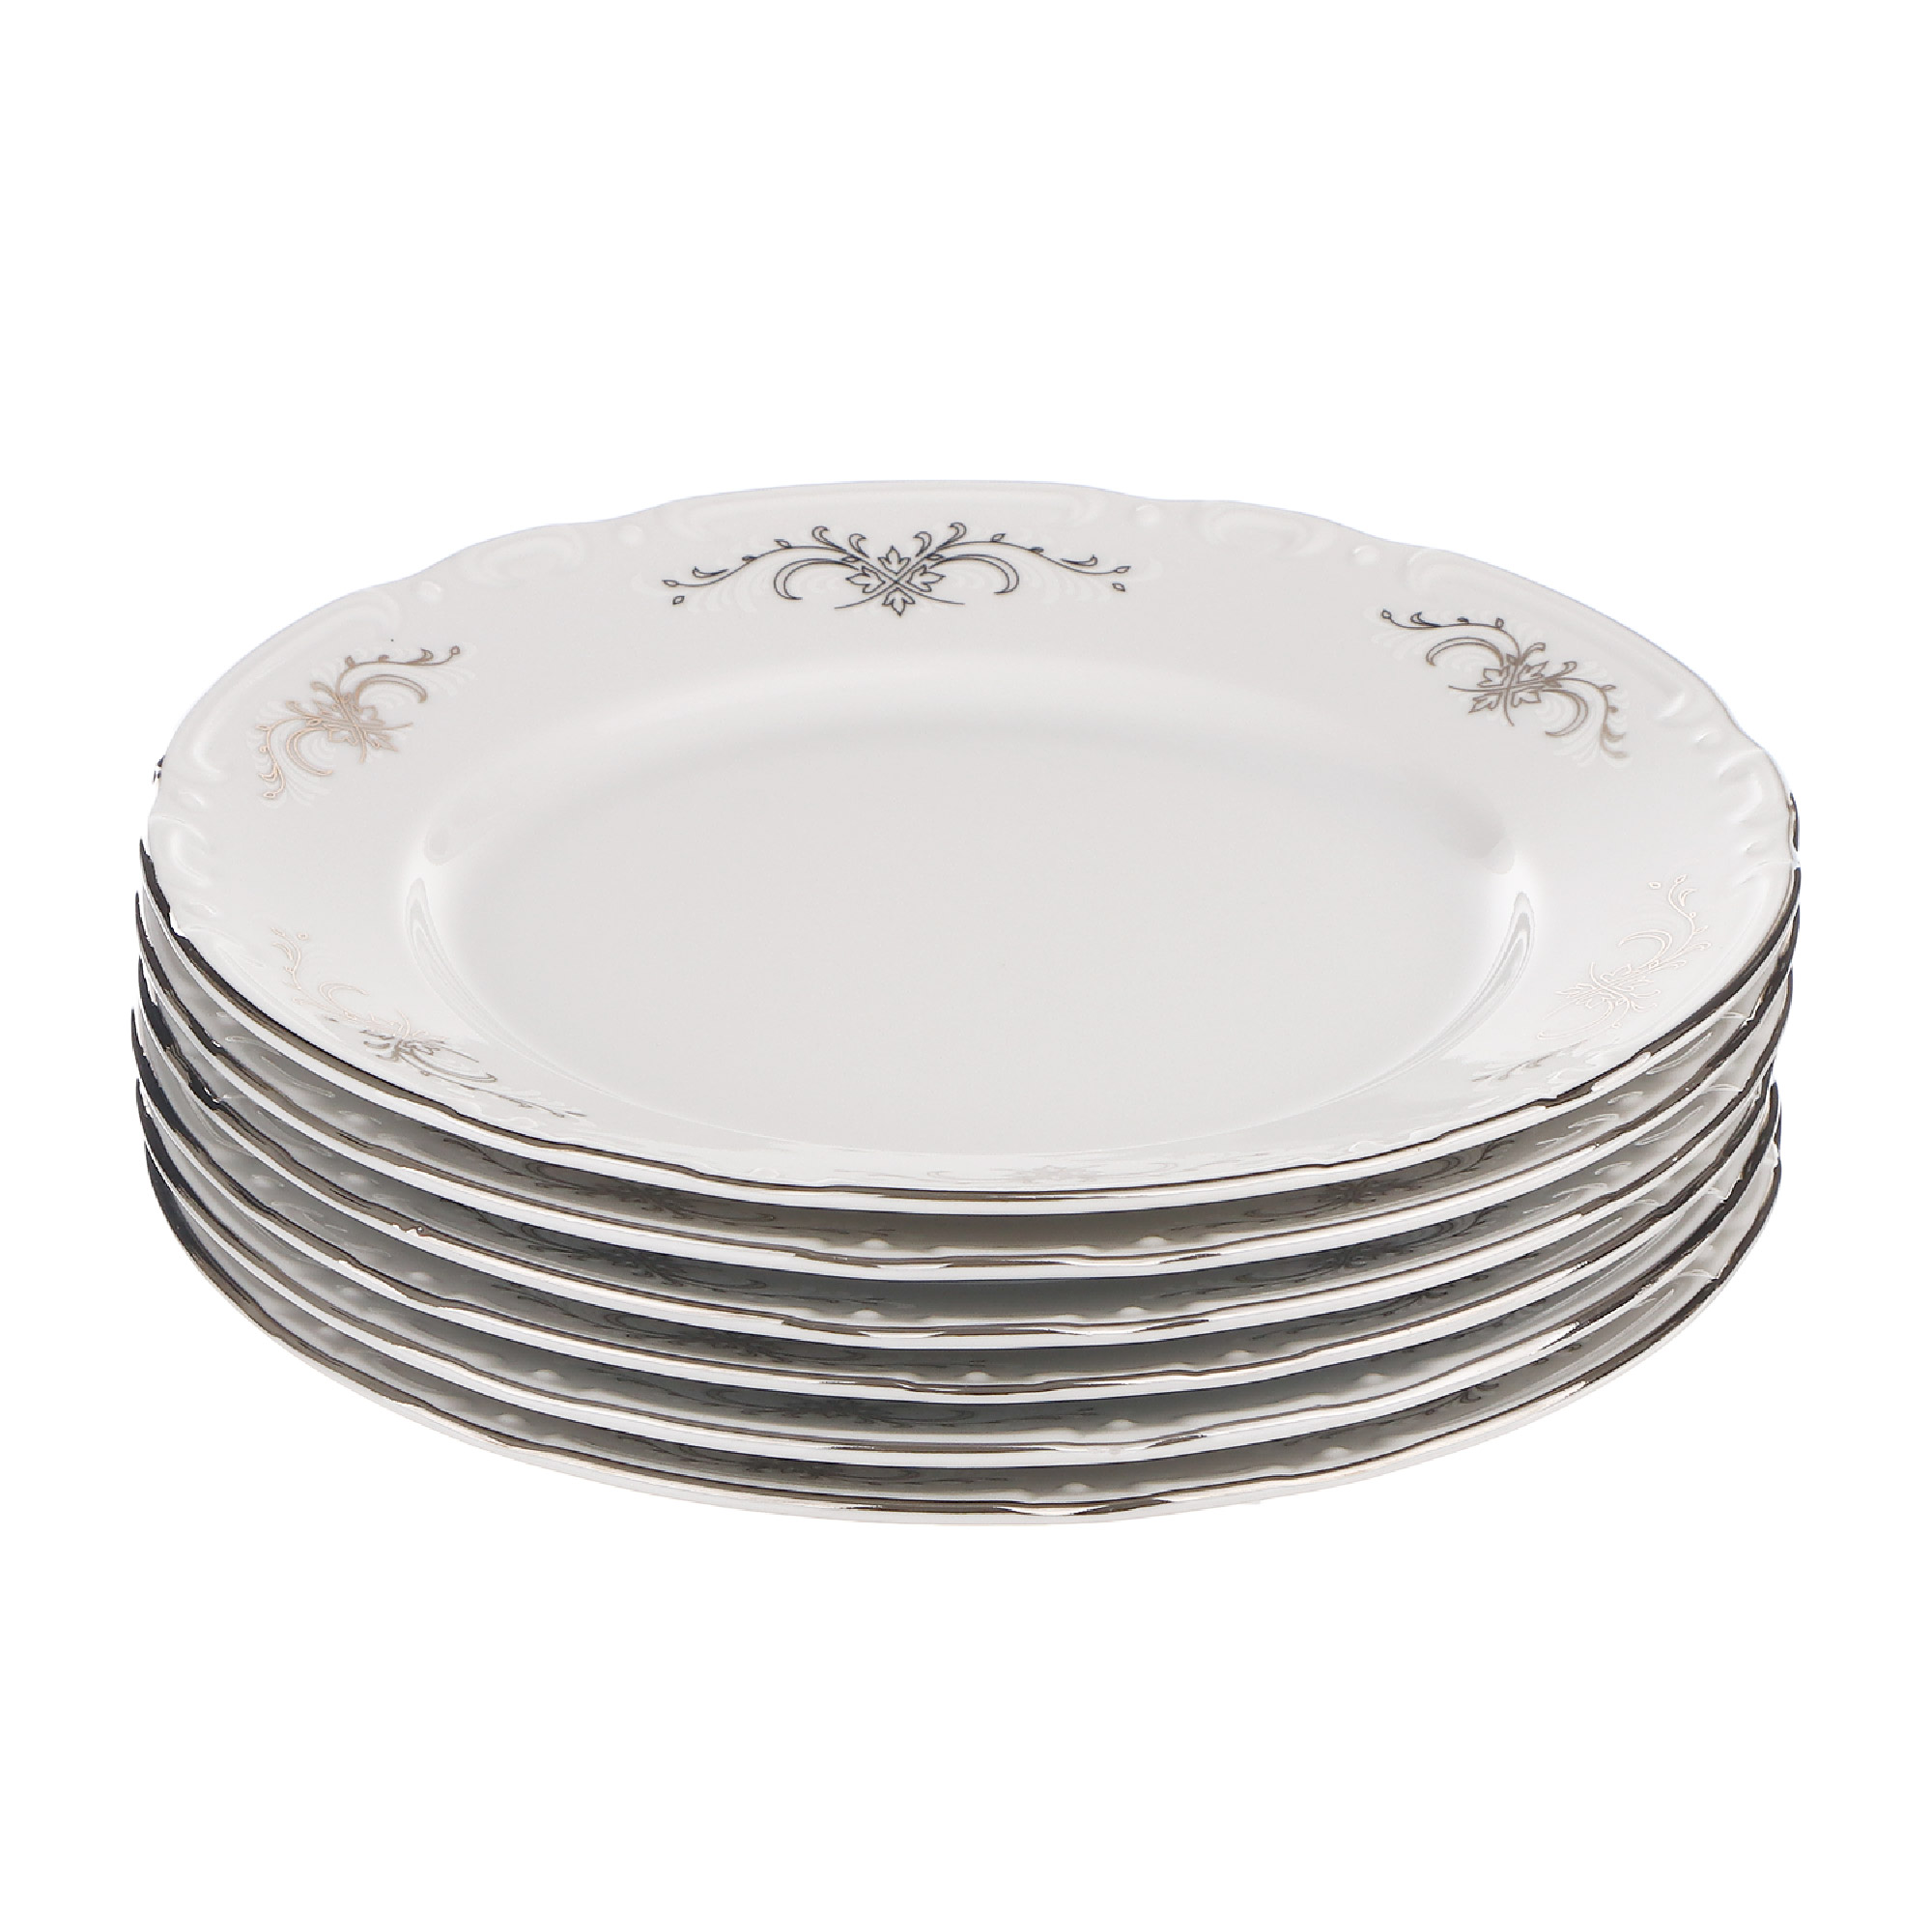 Набор десертных тарелок Thun1794 Констанция 17 см 6 шт набор тарелок thun1794 coupsoup декор серебряные колосья отводка платина 19 см 6 шт